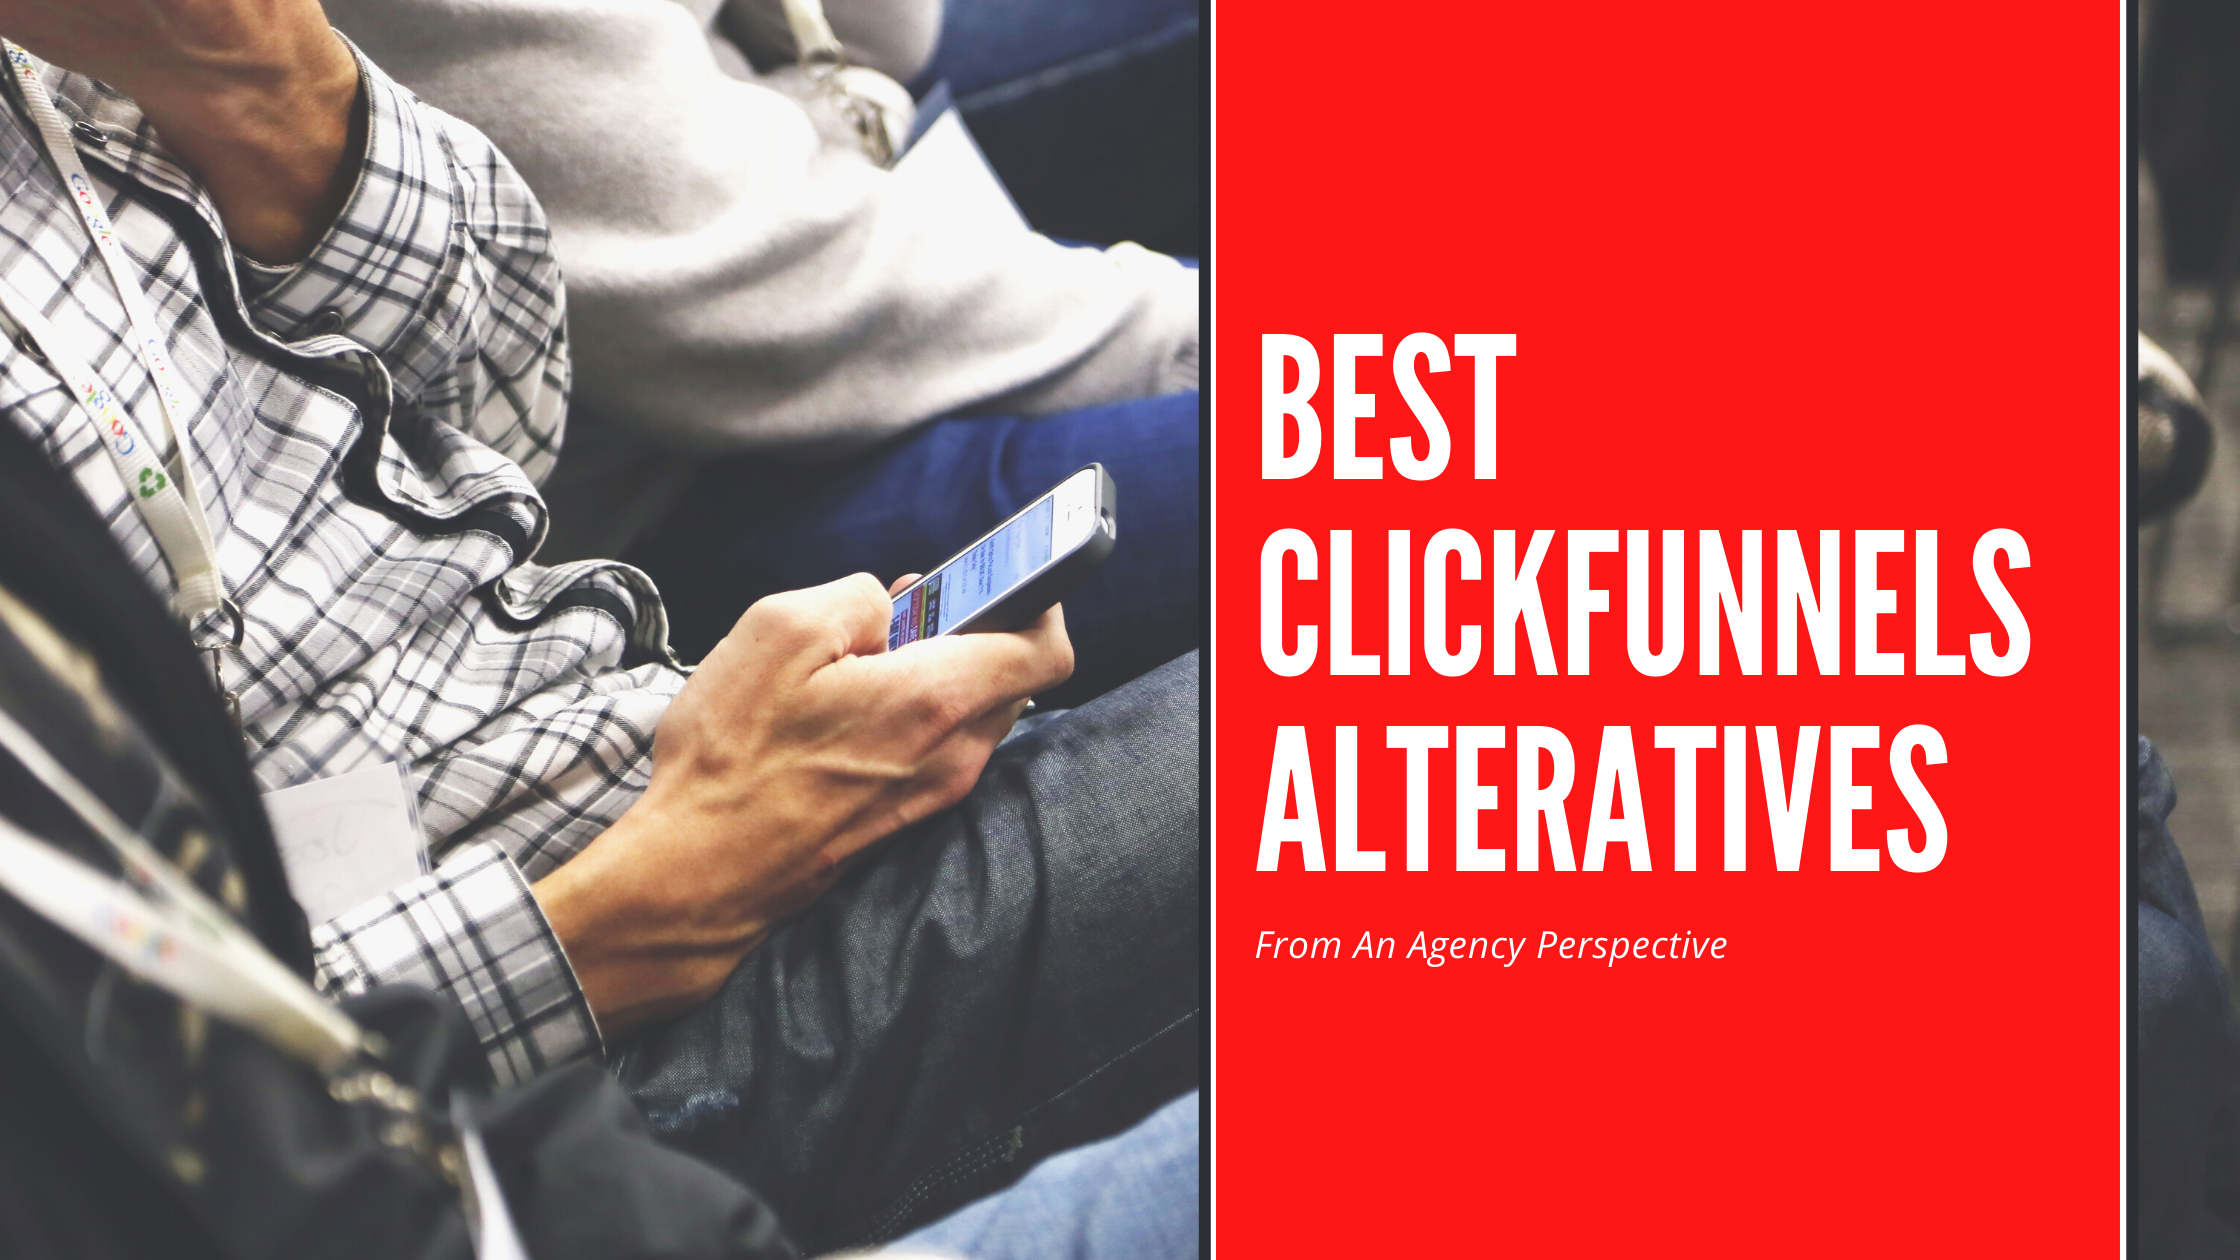 Best Clickfunnels Alteratives